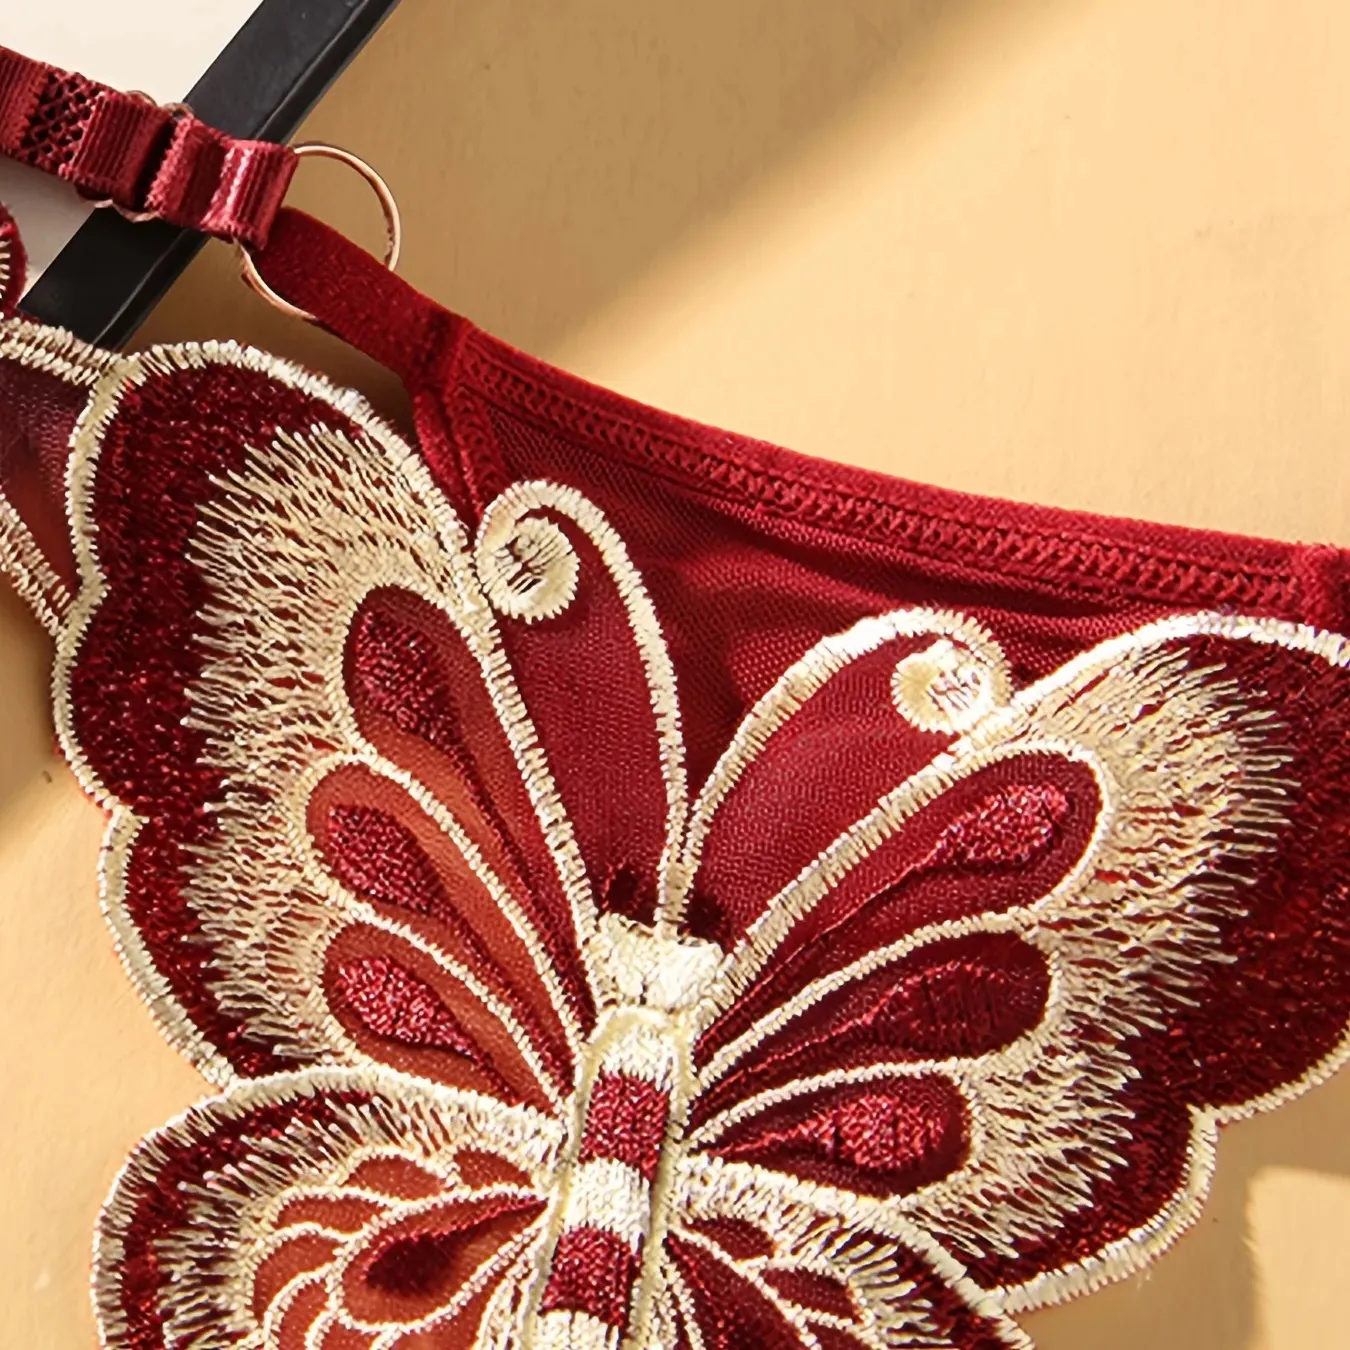 나비 패턴 끈팬티, 편안하고 통기성 있는 친밀한 팬티, 여성용 란제리 및 속옷